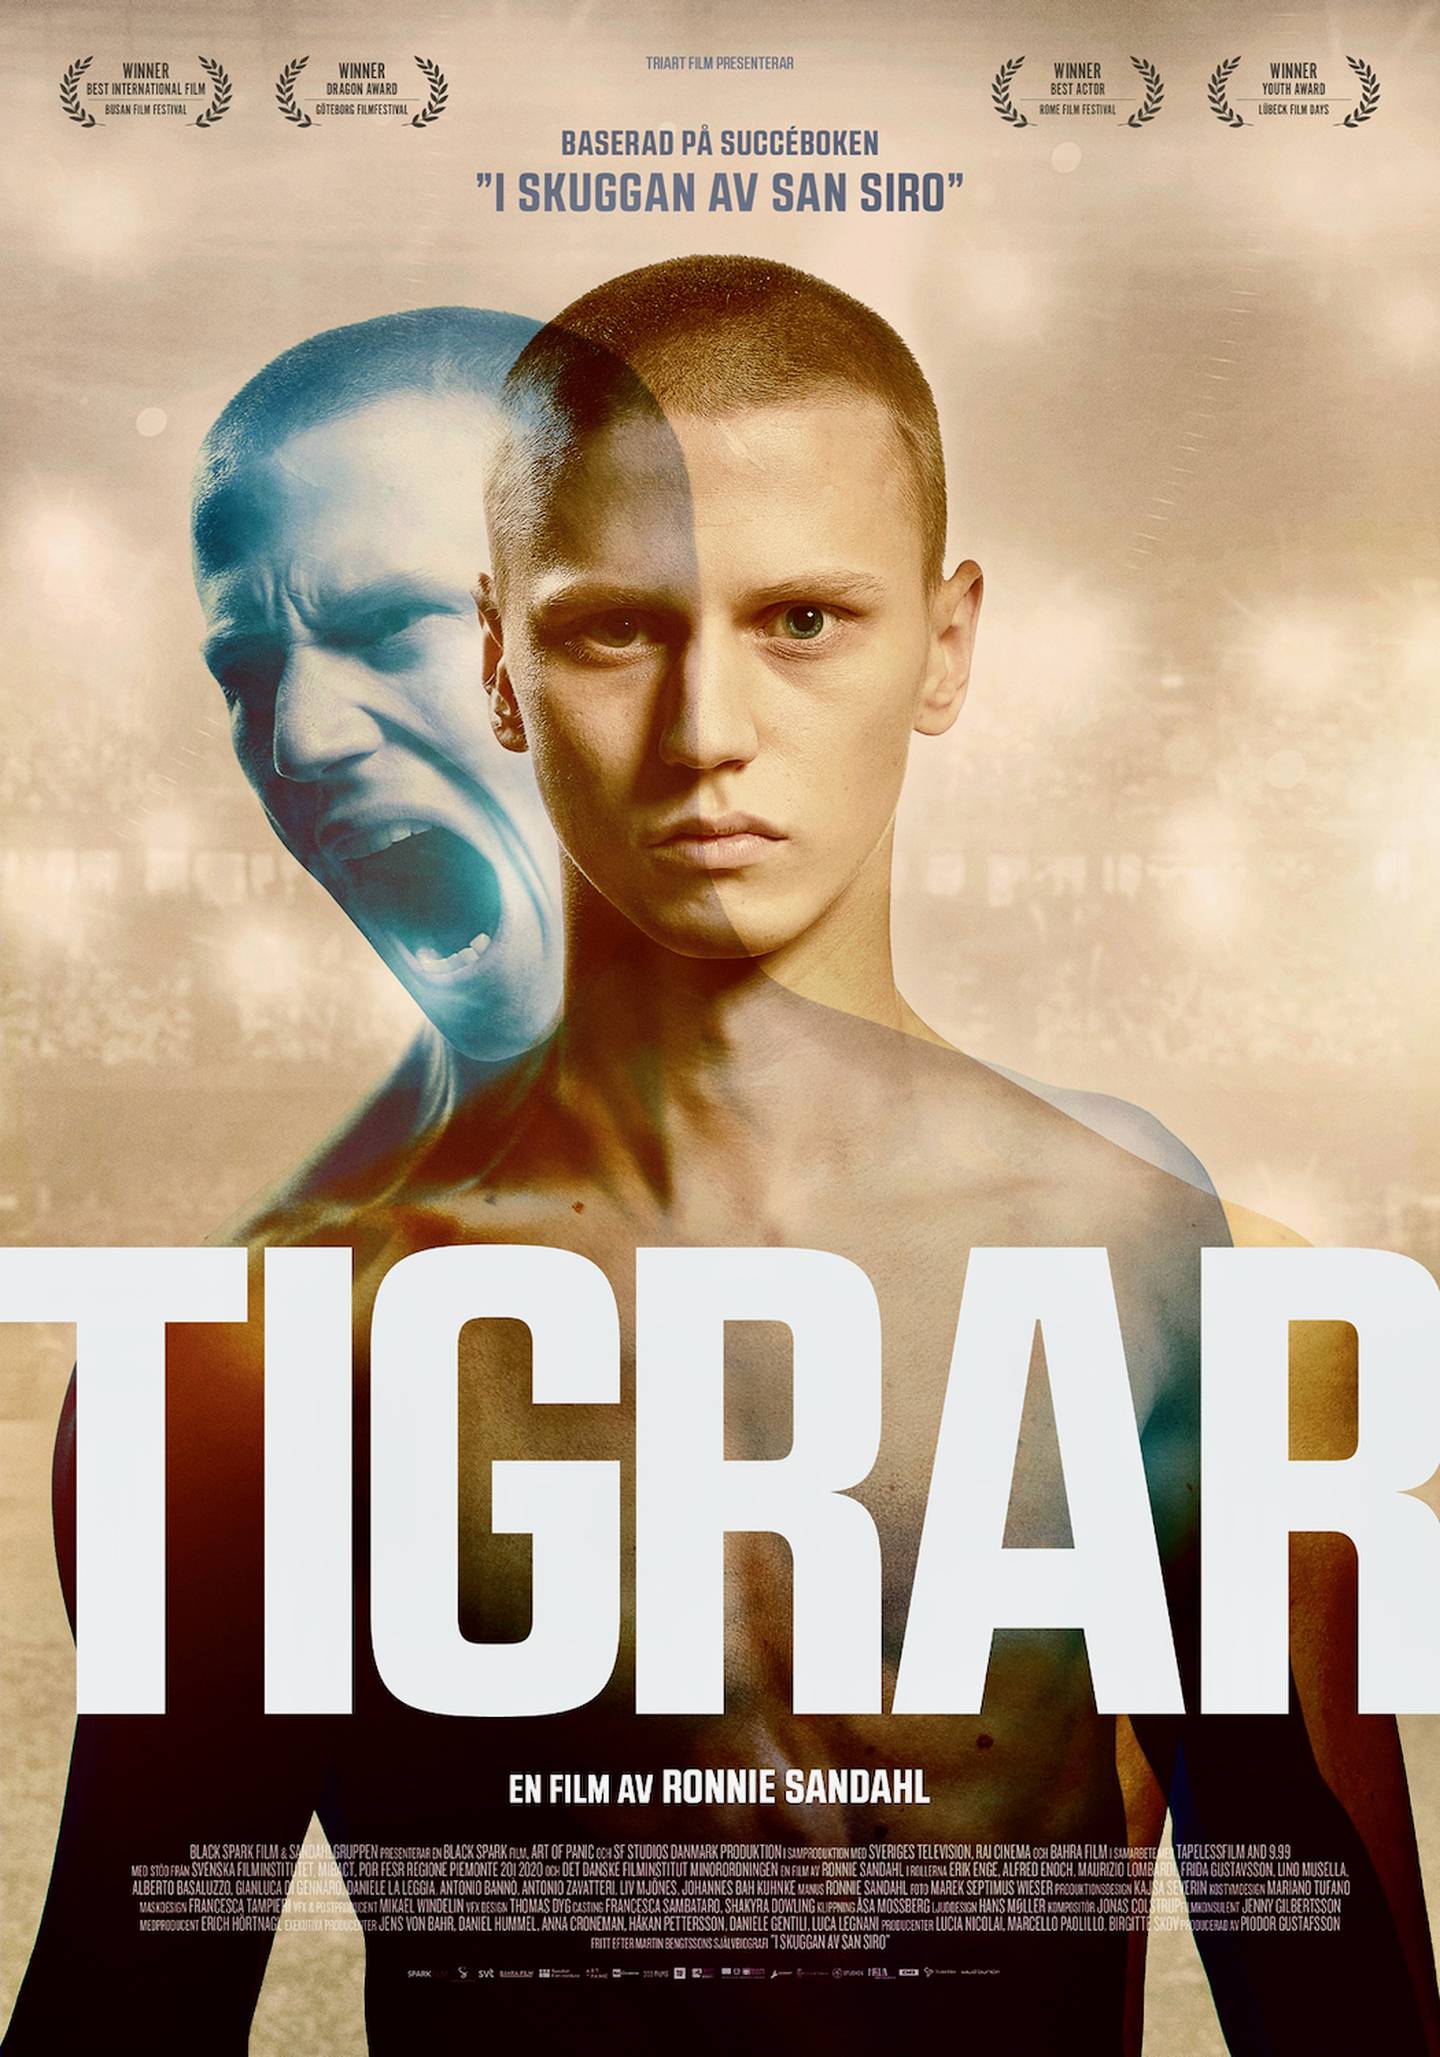 Tigrar, film av Ronnie Sandahl med Erik Enge i huvudrollen.